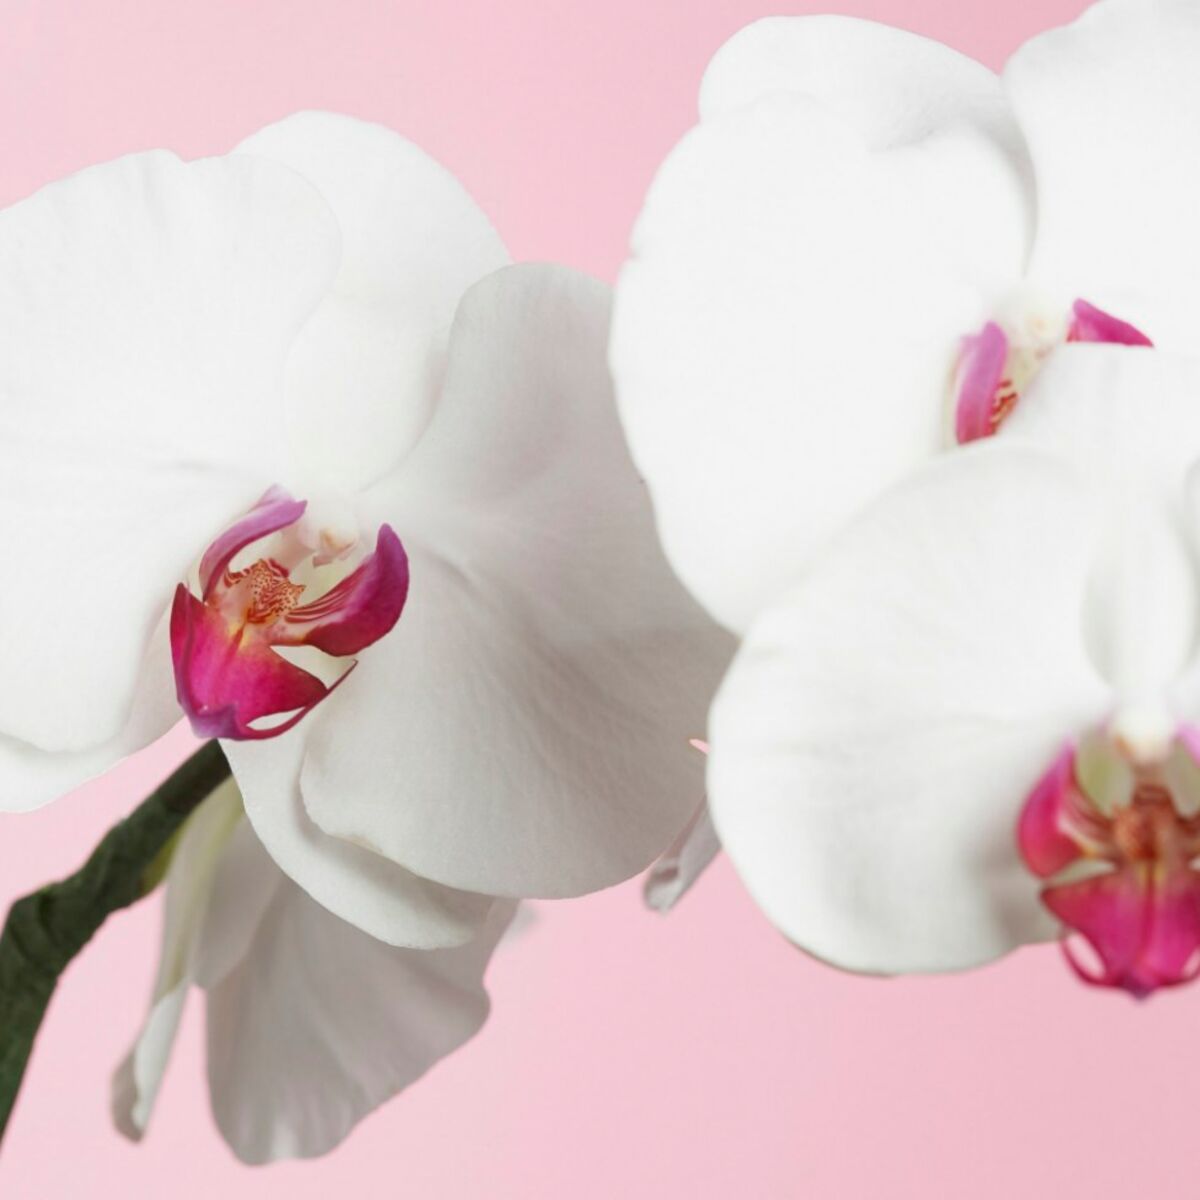 Comment faire refleurir une orchidée : Femme Actuelle Le MAG